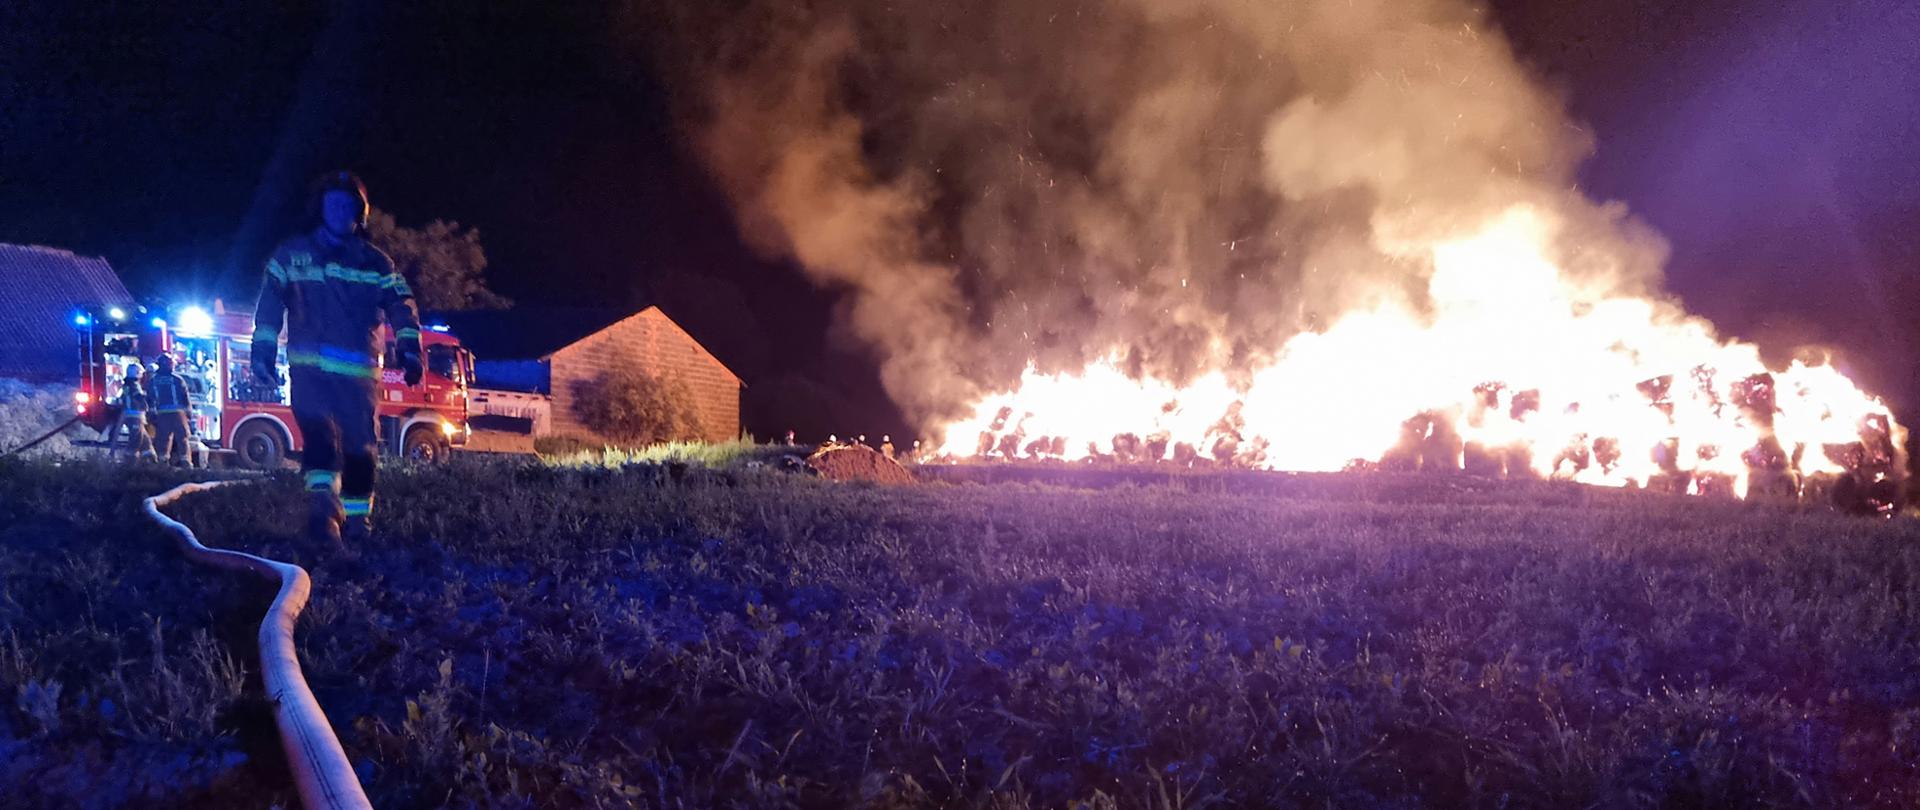 Pożar stogu w Kucharach - zagrożone zabudowania